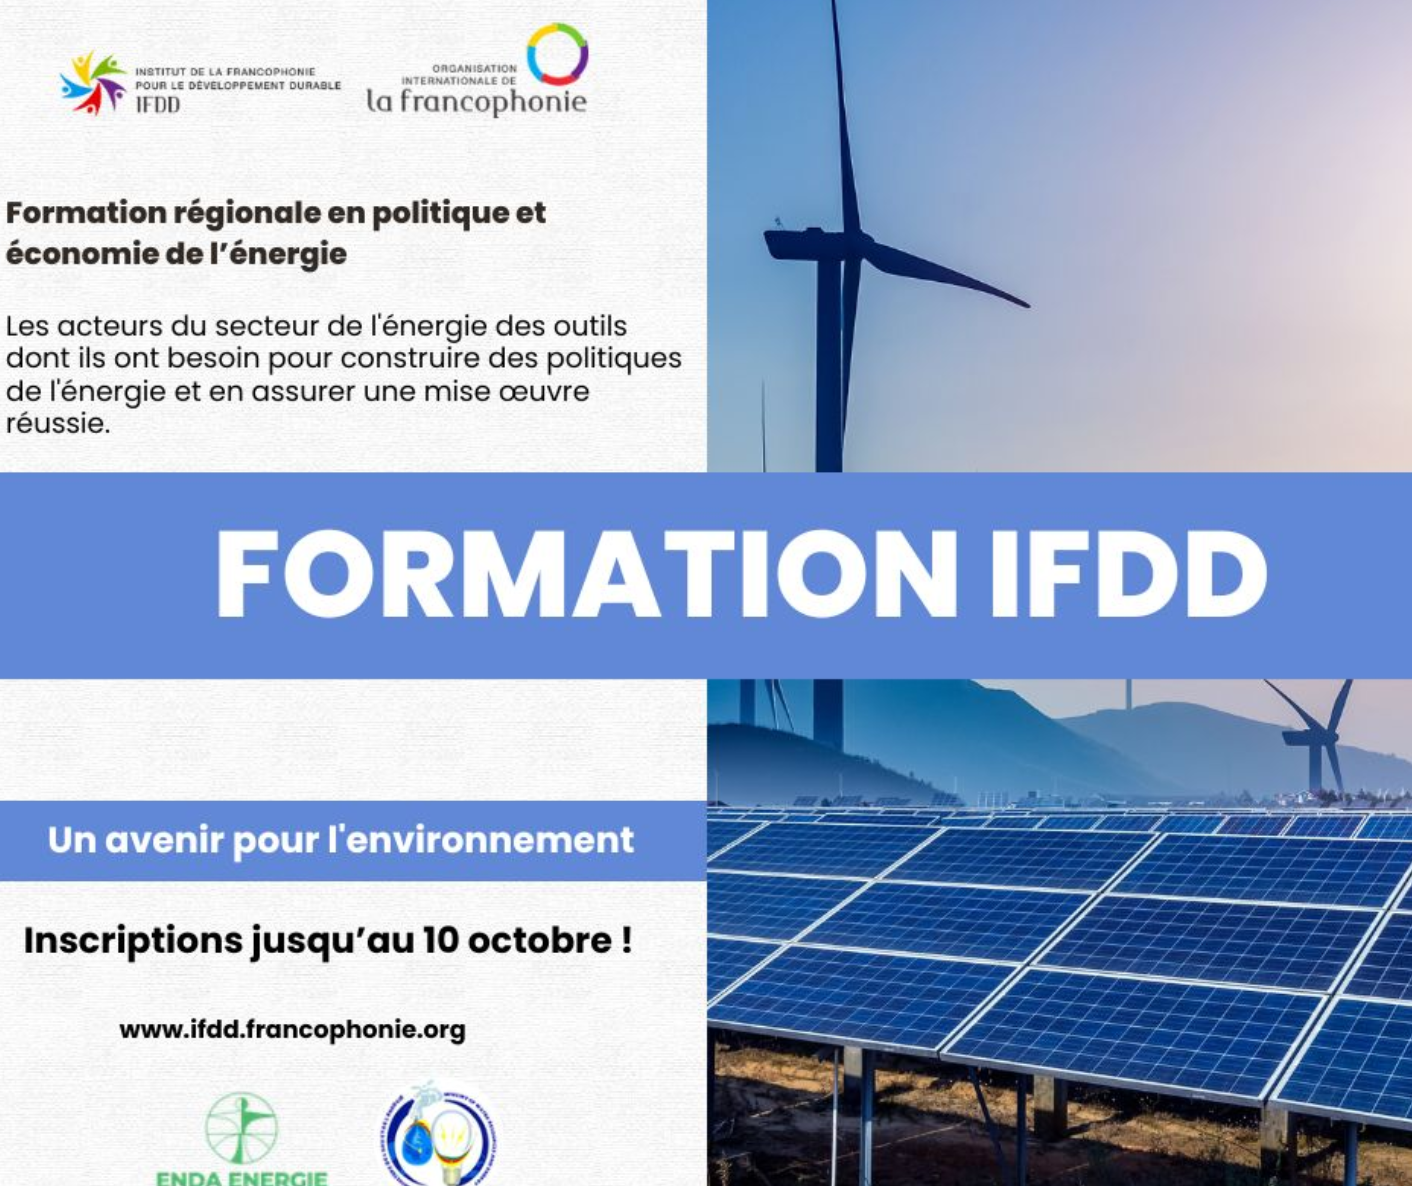 Formation régionale en politique et économie de l’énergie avec l’IFDD !!!